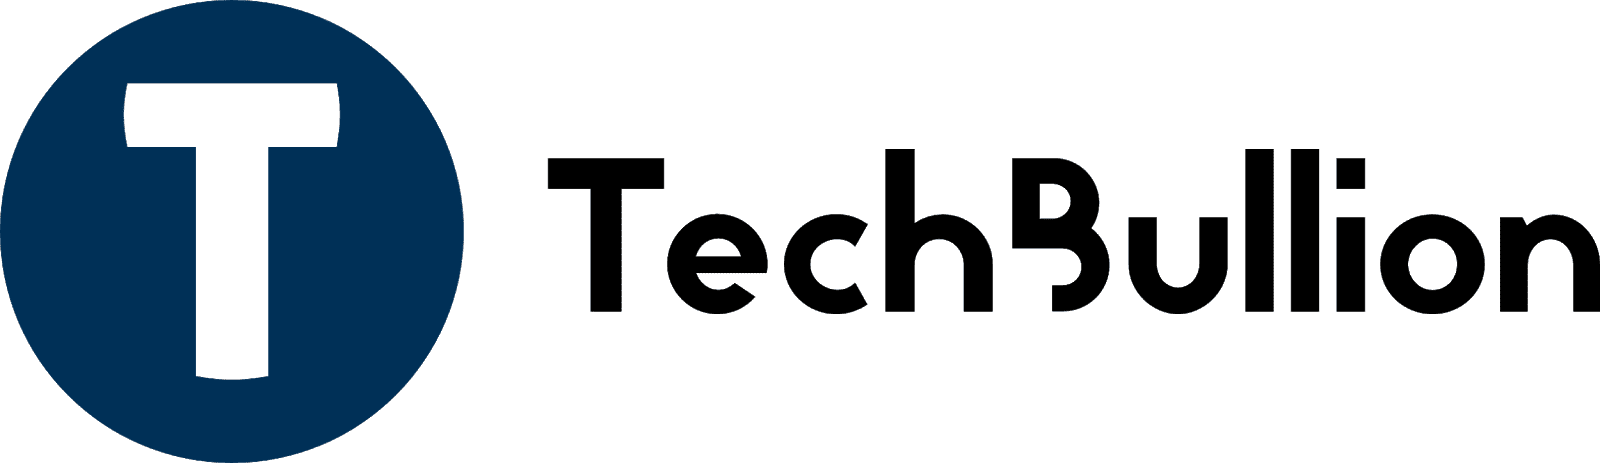 techbullion logo